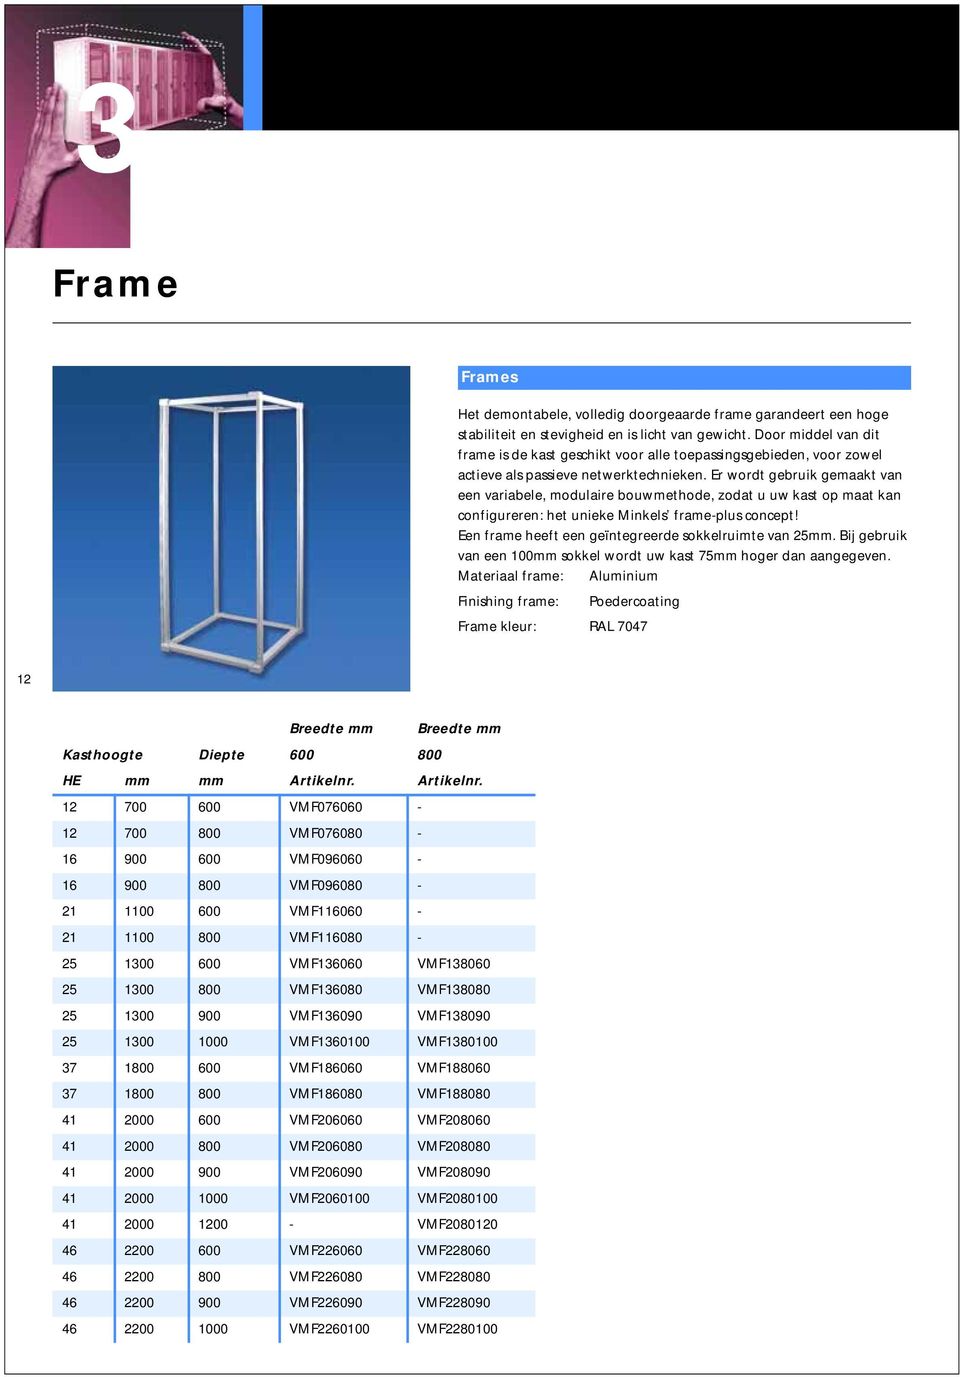 Er wordt gebruik gemaakt van een variabele, modulaire bouwmethode, zodat u uw kast op maat kan configureren: het unieke Minkels frame-plus concept!